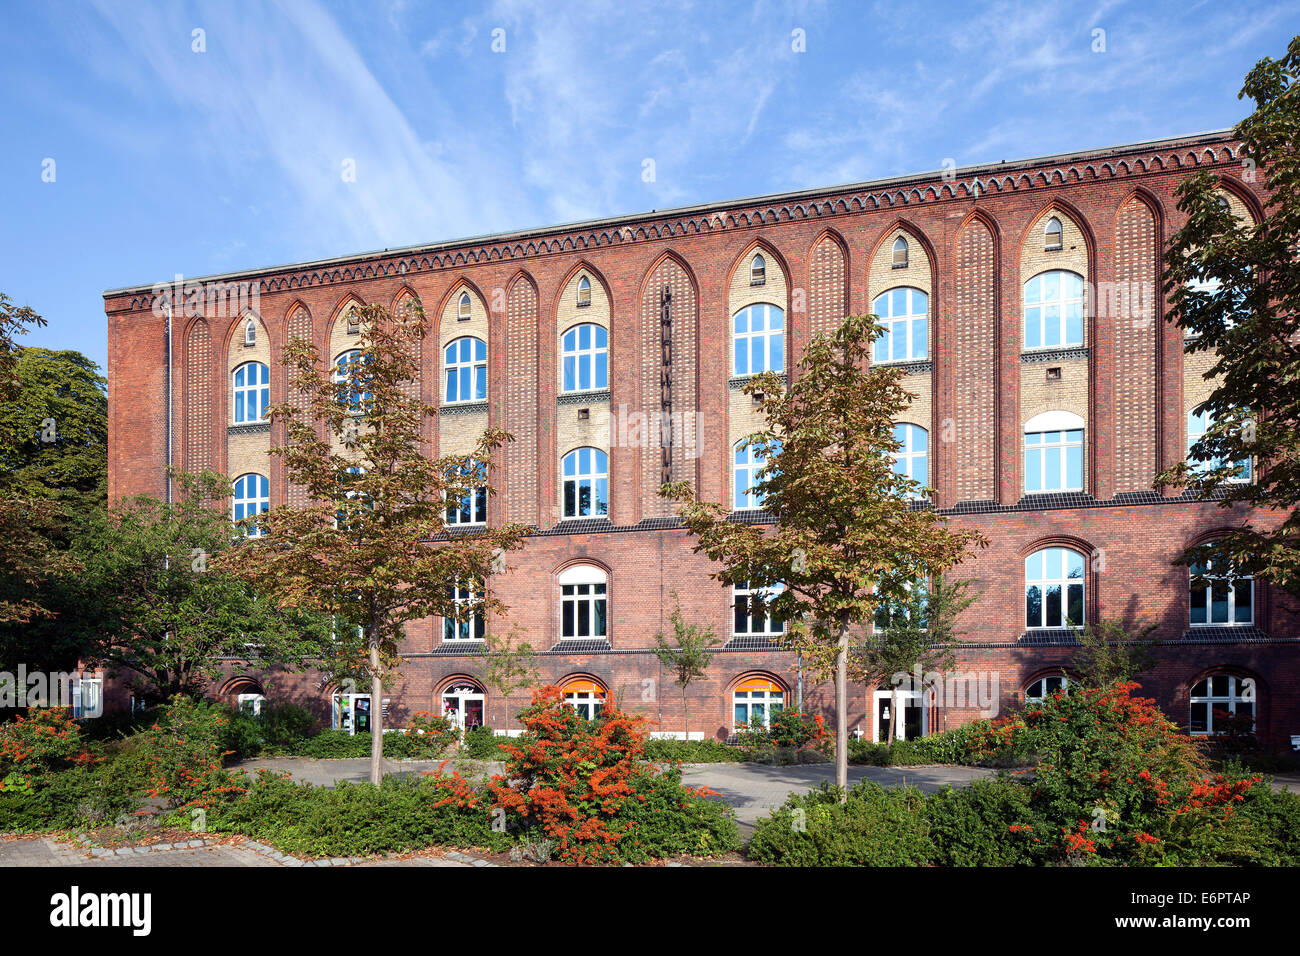 Ville de style néo-gothique, de l'hôpital polyclinique plus tard, aujourd'hui centre de santé, Stralsund, Mecklembourg-Poméranie-Occidentale, Allemagne Banque D'Images